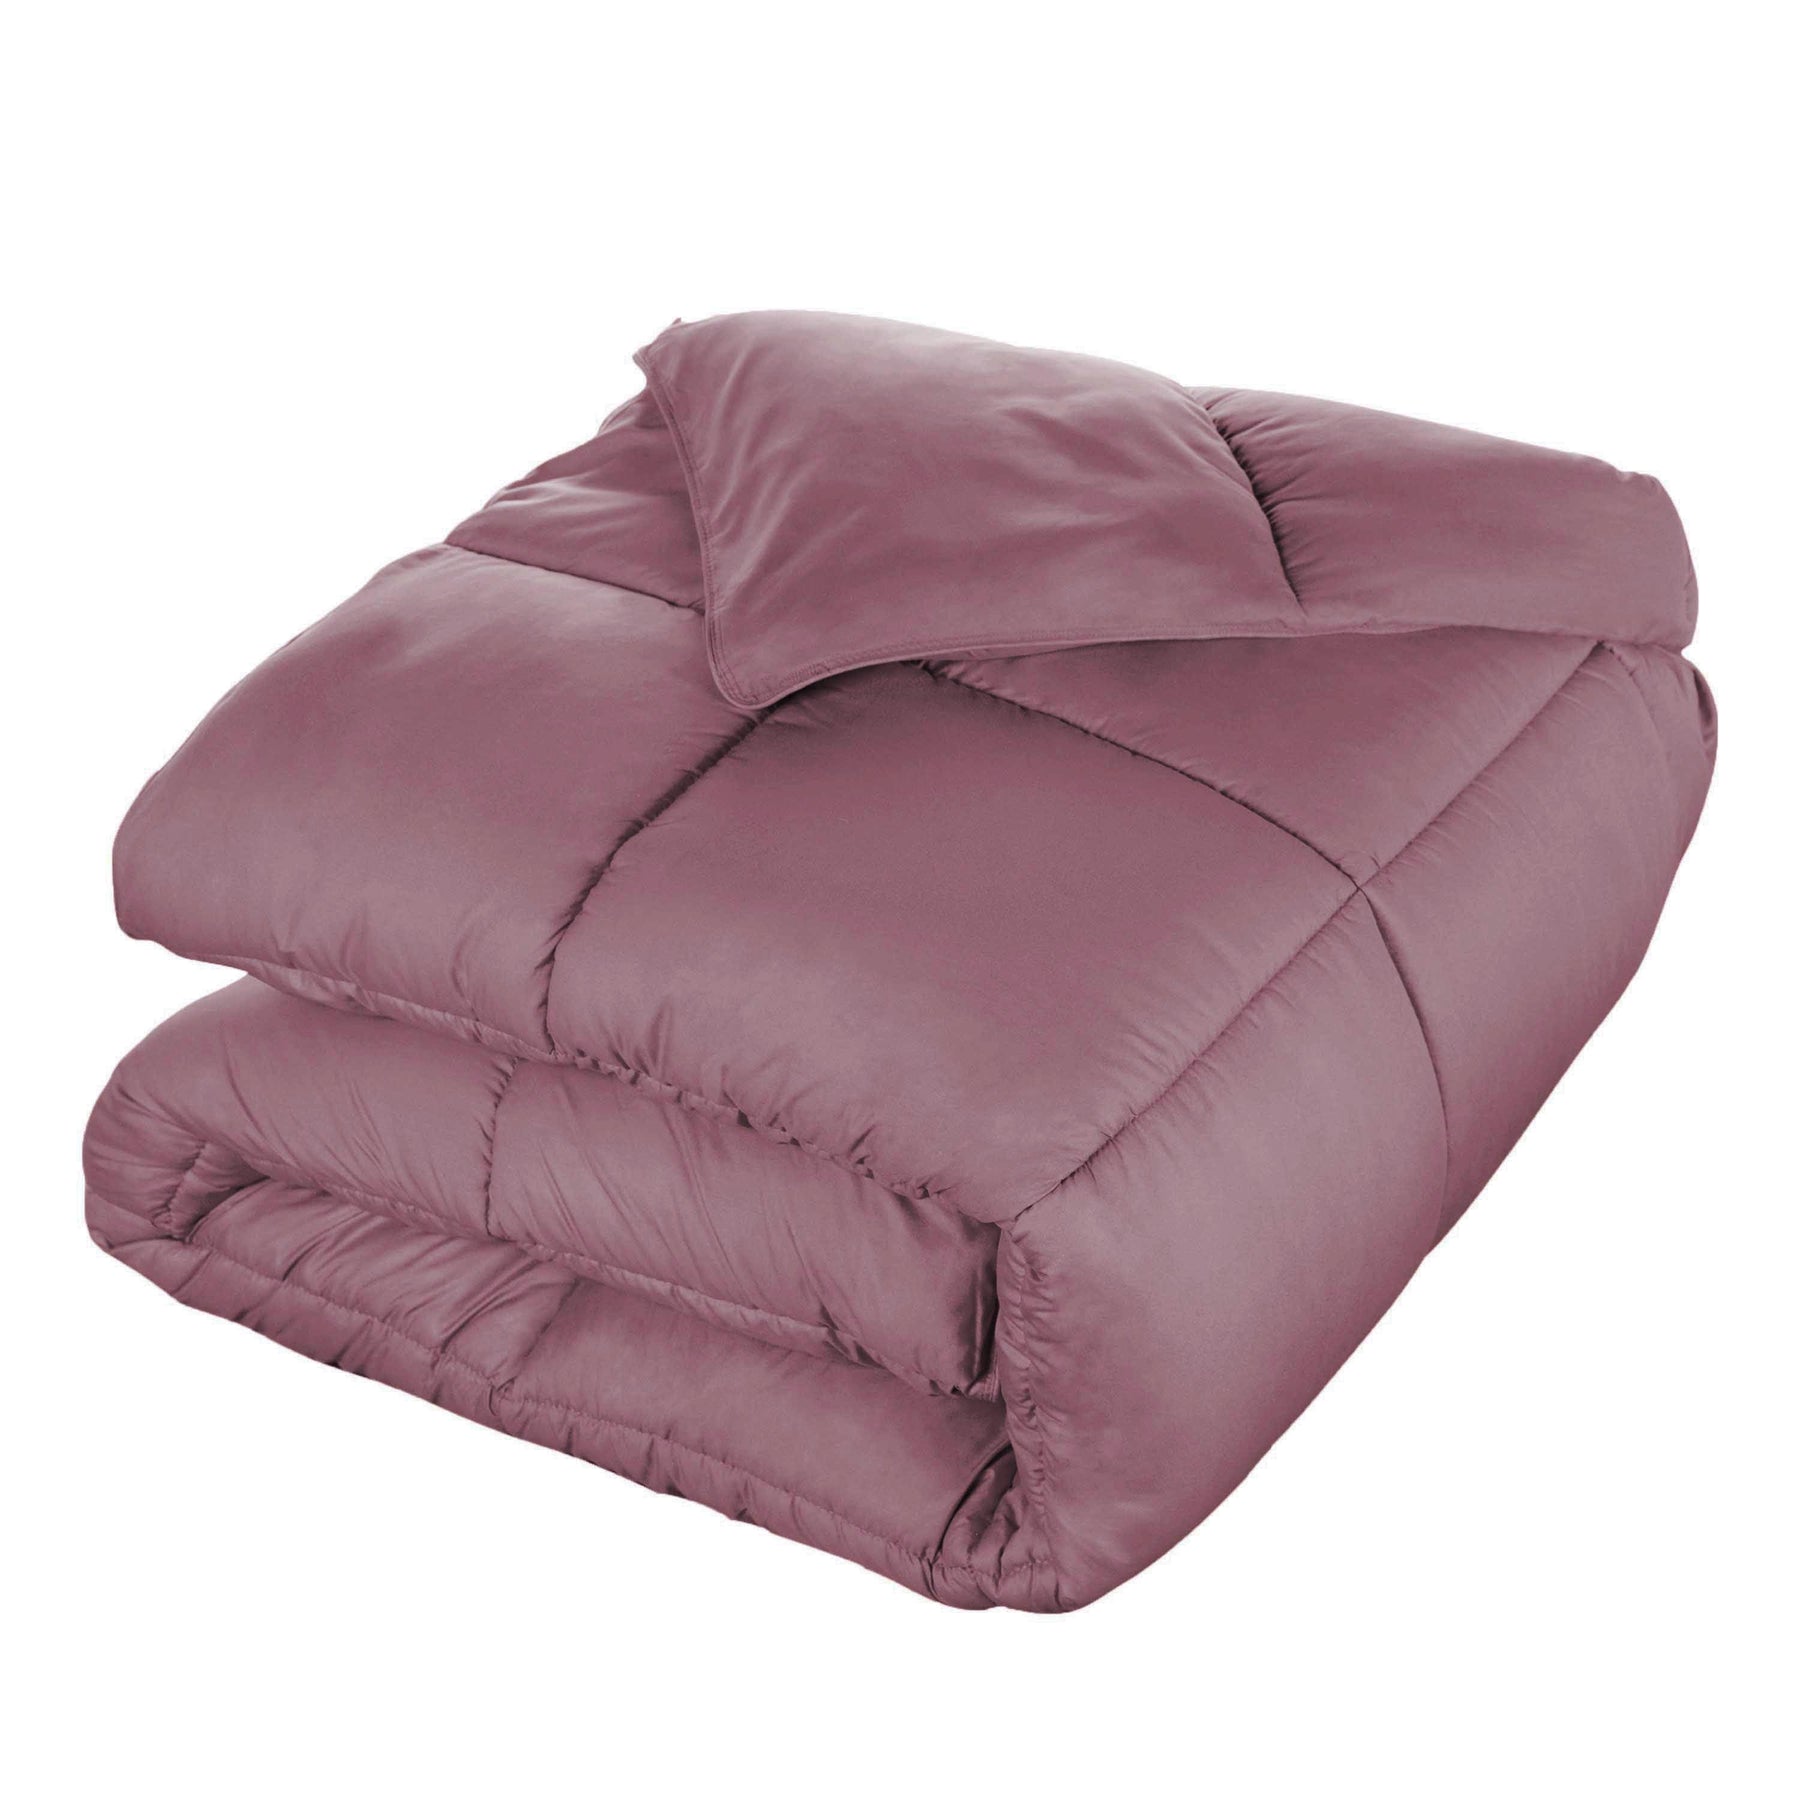  Superior Solid All Season Down Alternative Microfiber Comforter - Mauve